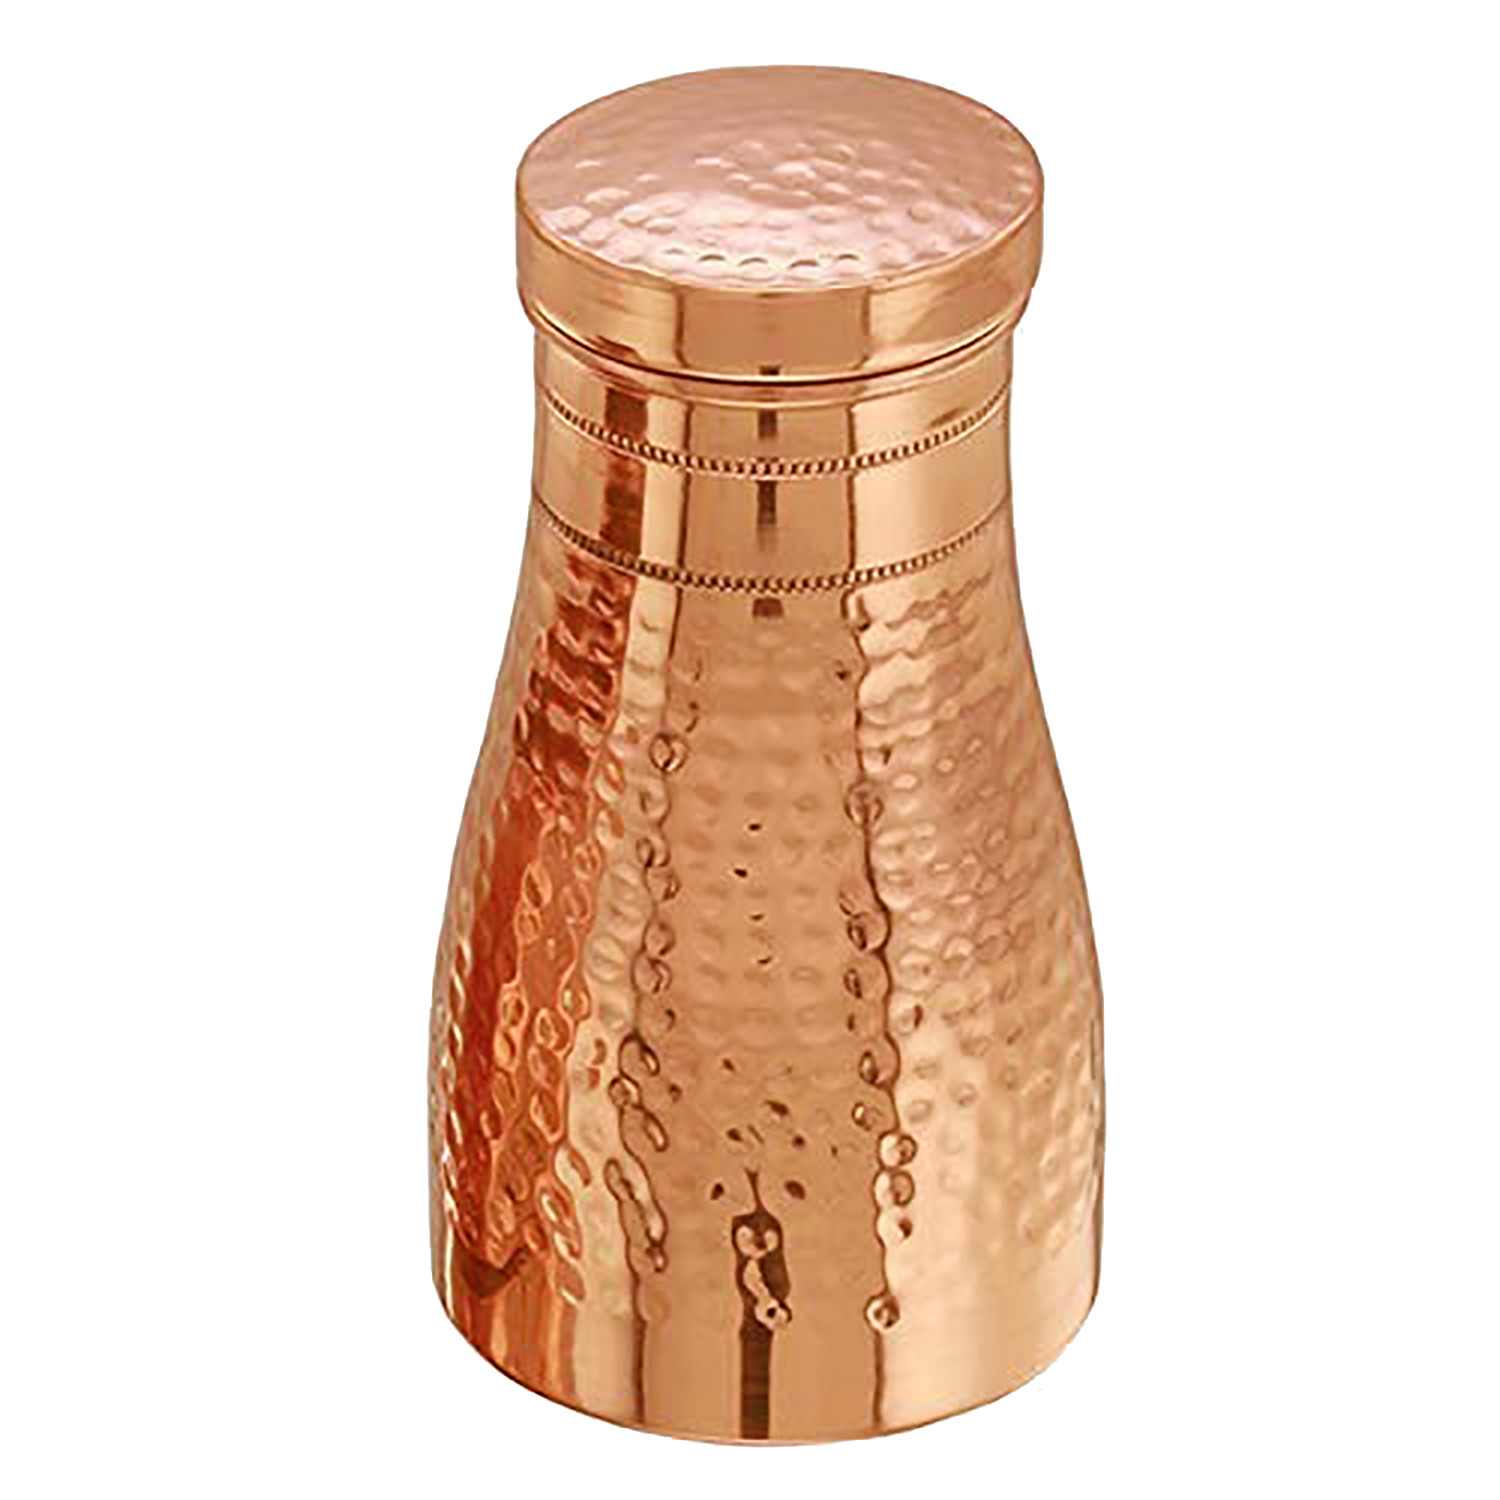 Kuber industries Hammered Copper Bedroom Jar|Bedside Water Bottle with Inbuilt Glass, 1100 ml (Gold)